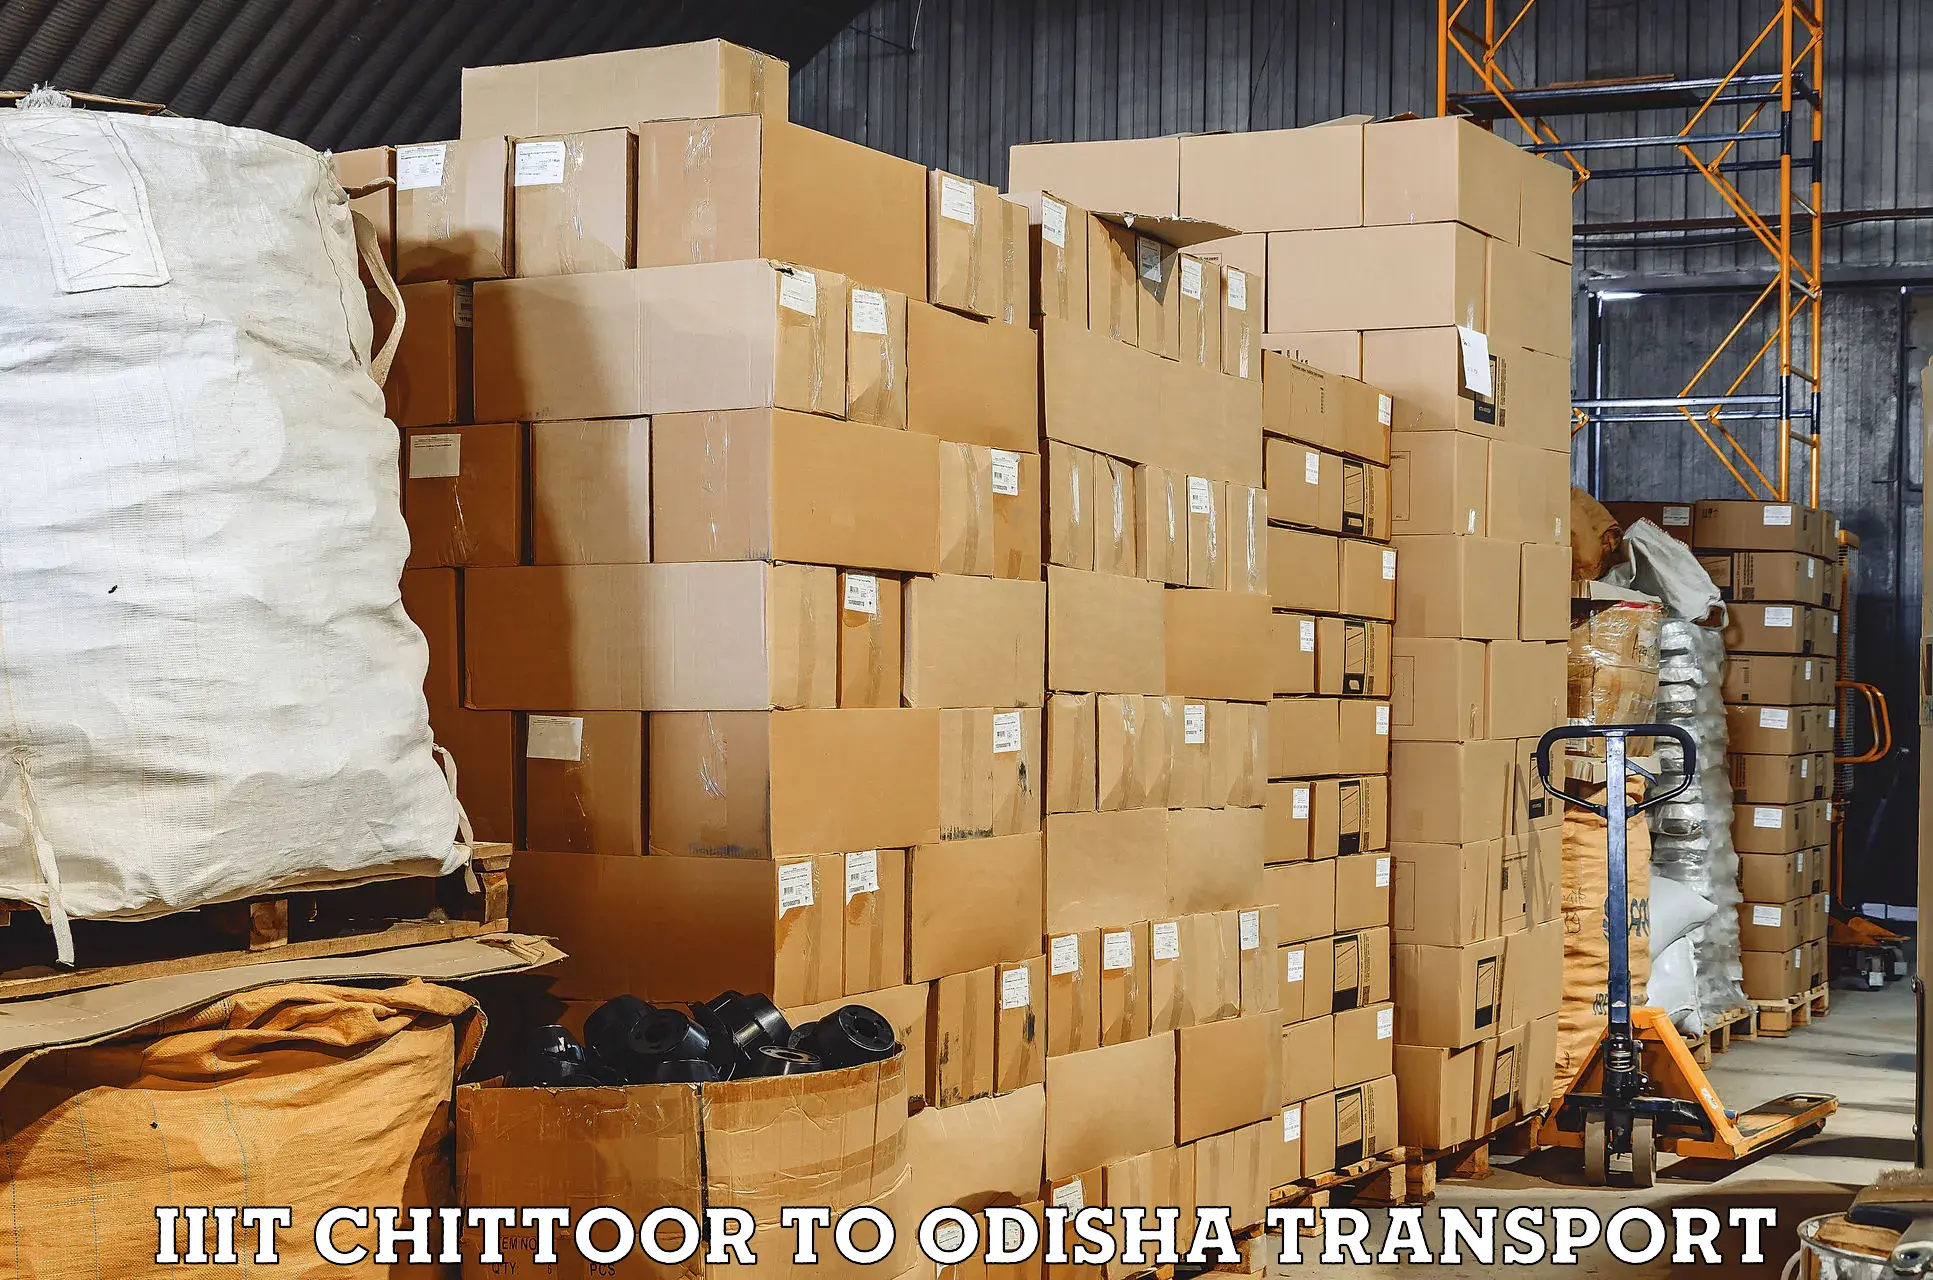 Cargo transport services IIIT Chittoor to Basta